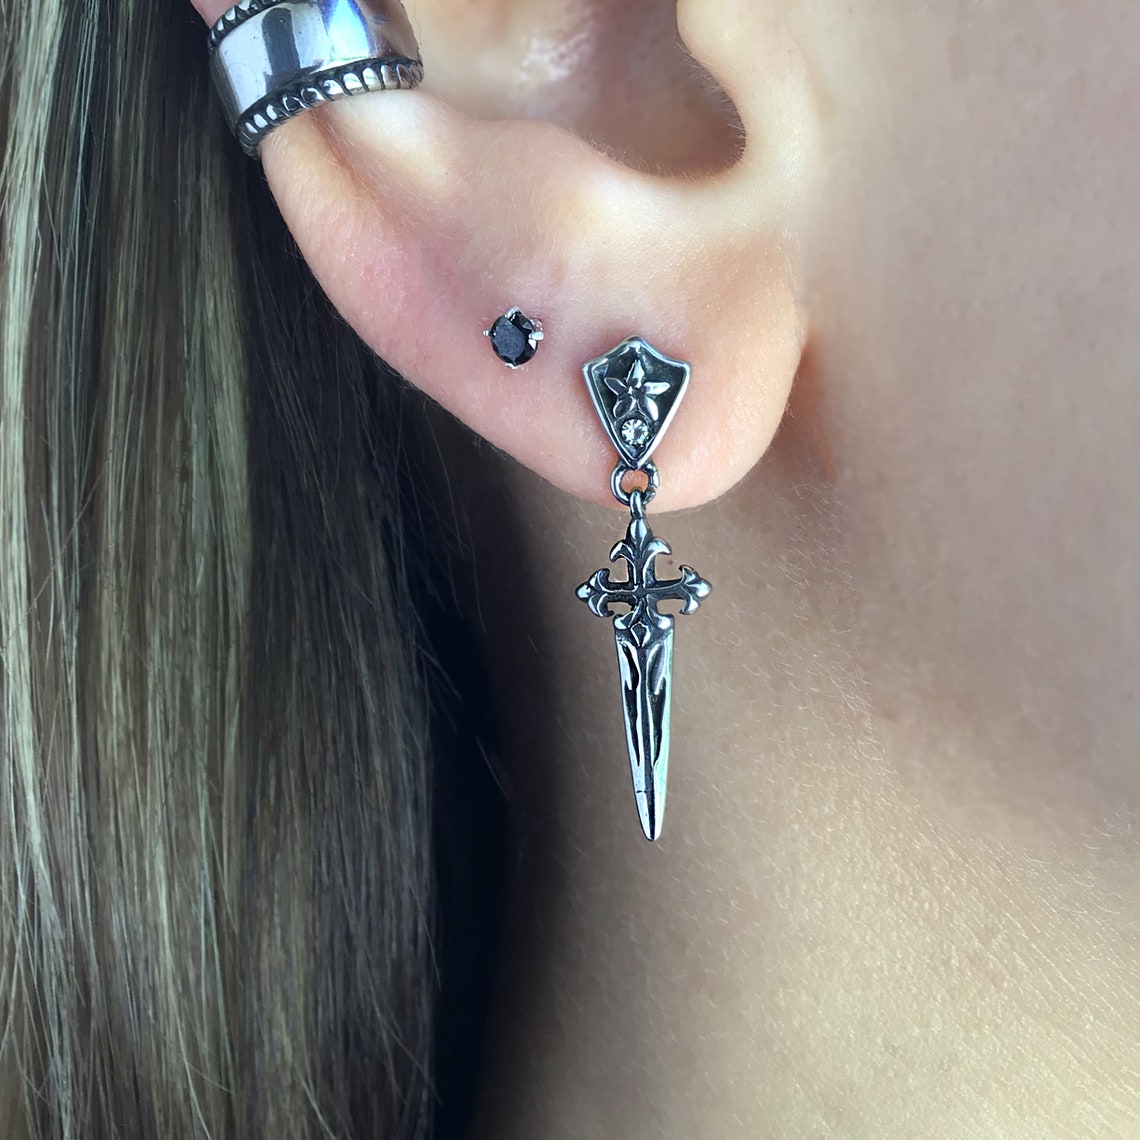 Dagger Earrings Dagger Studs Cross Earrings Stainless Steel - Etsy